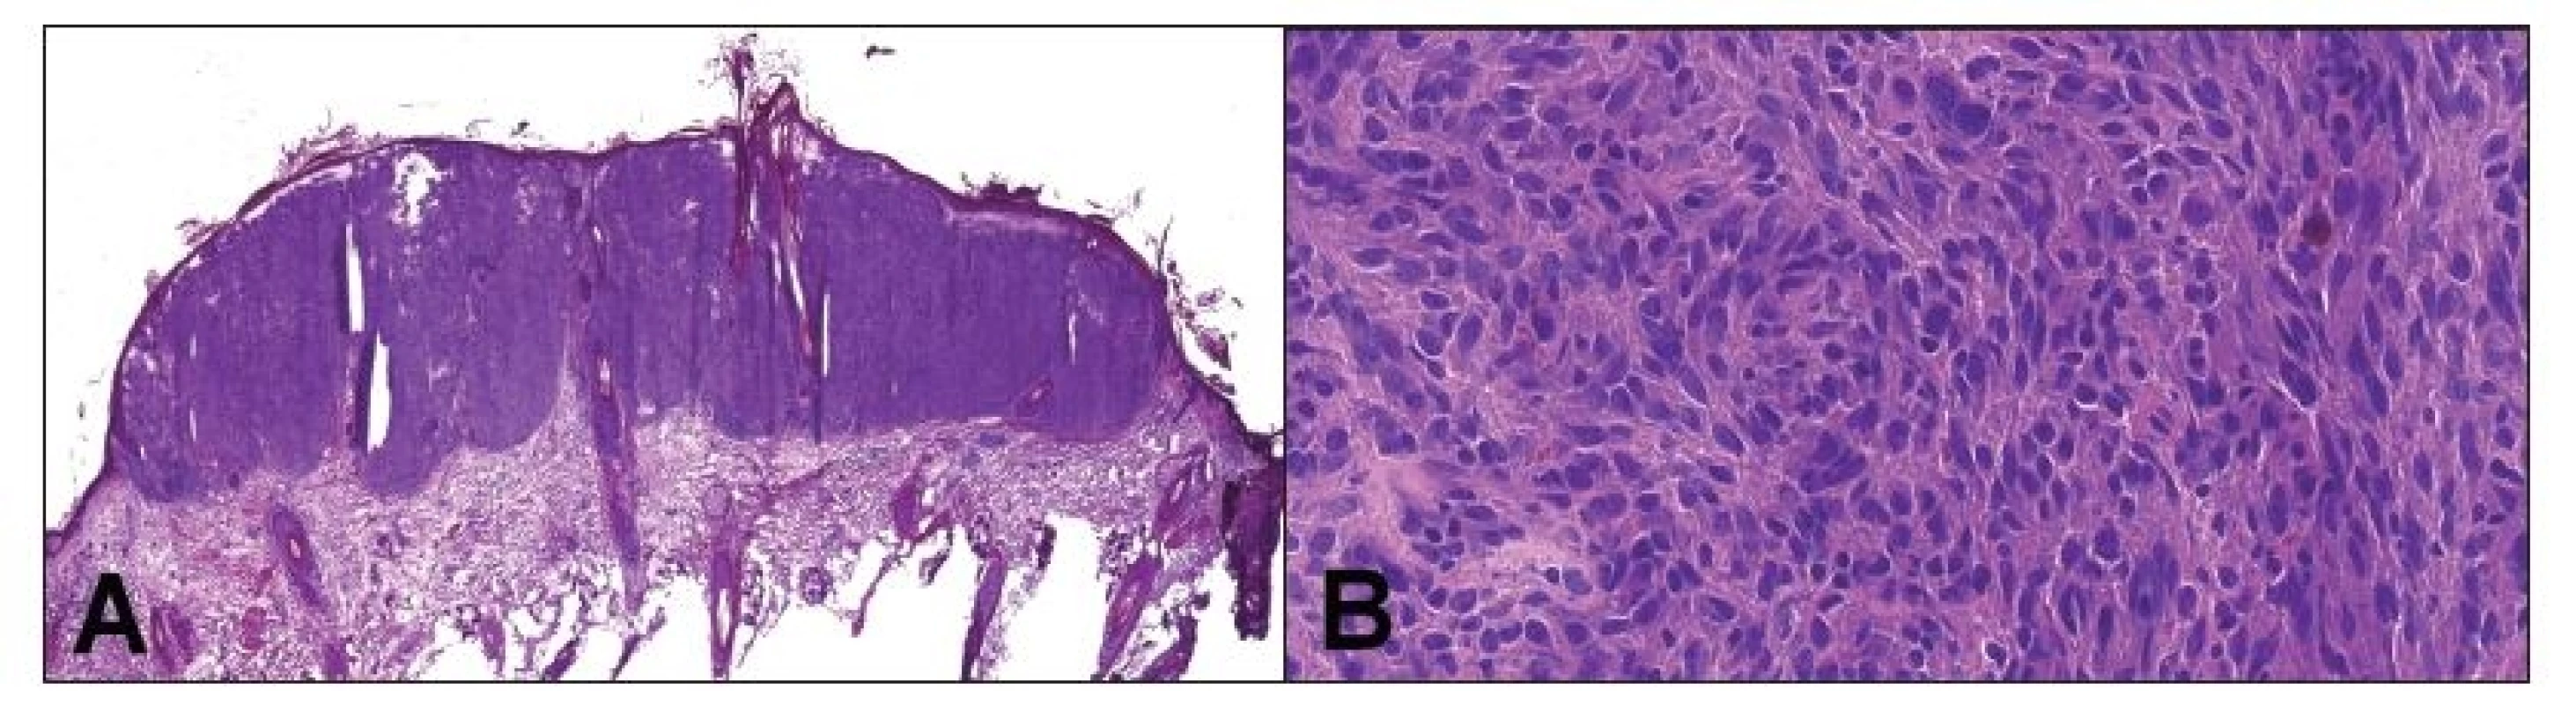 Peroperačné vyšetrenie hlavnej lézie v kapilíciu, ktorá bola klinicky považovaná za skvamocelulárny karcinóm. Jednalo sa
o nodulárne ložisko pod intaktnou epidermis (A). Tumor bol zložený prevažne z pleomorfných vretenitých buniek, s početnými
mitózami. Celkom ojedinele nádorové bunky obsahovali hnedý pigment (B). Peroperačná diagnóza: malígny melanóm.